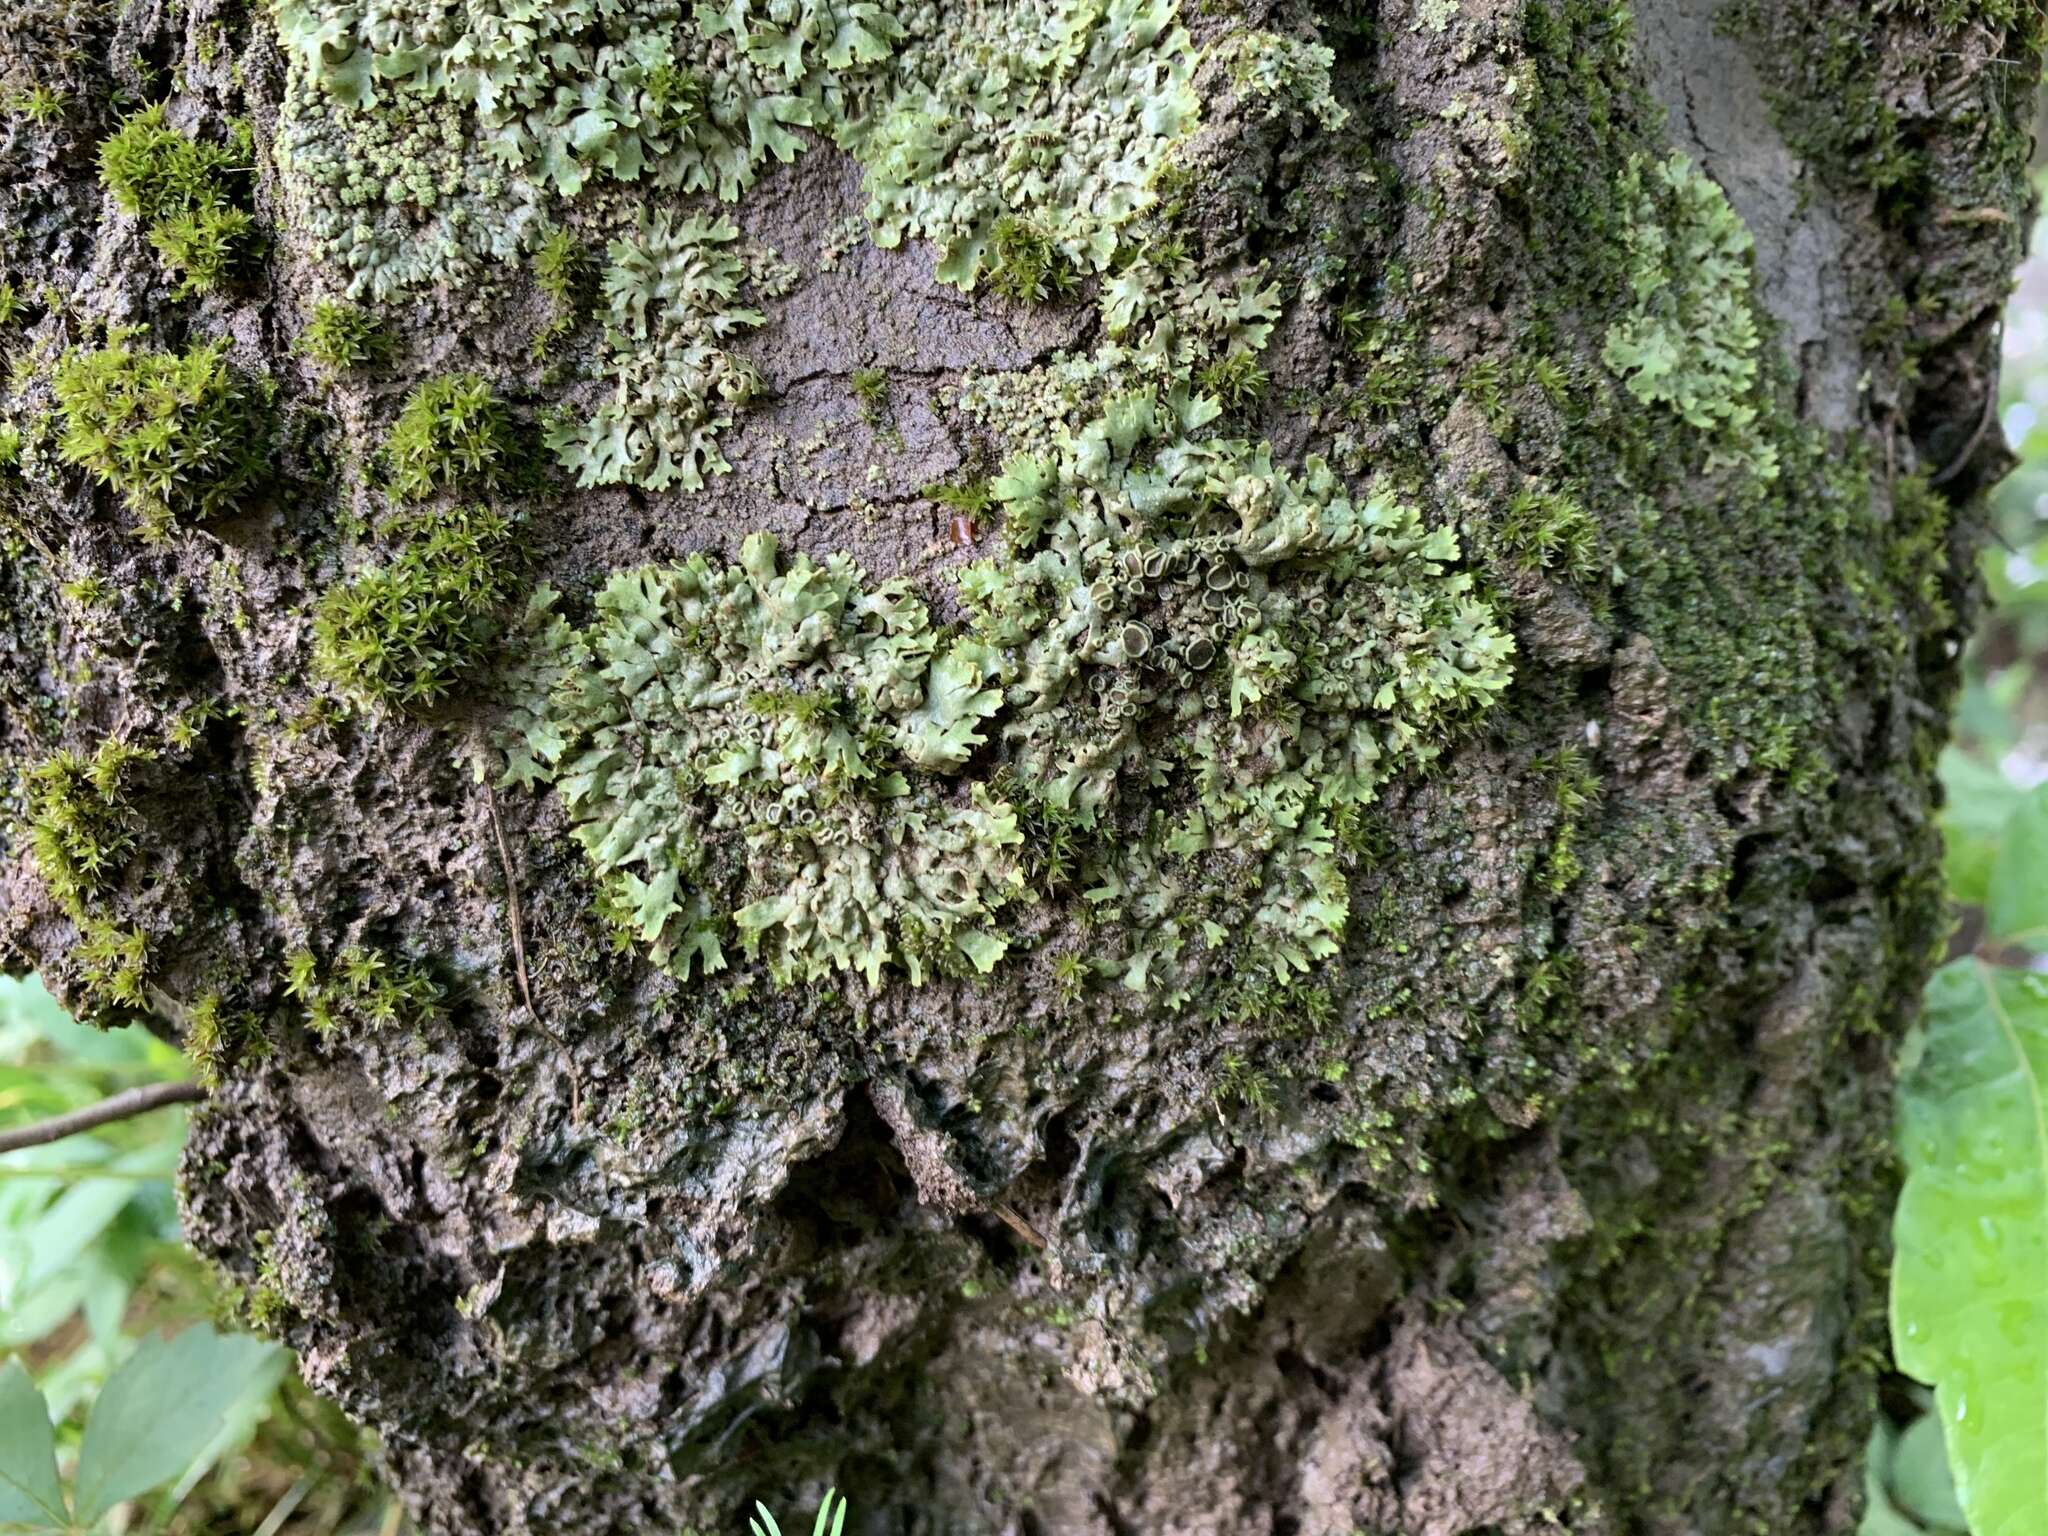 Image of wreath lichen